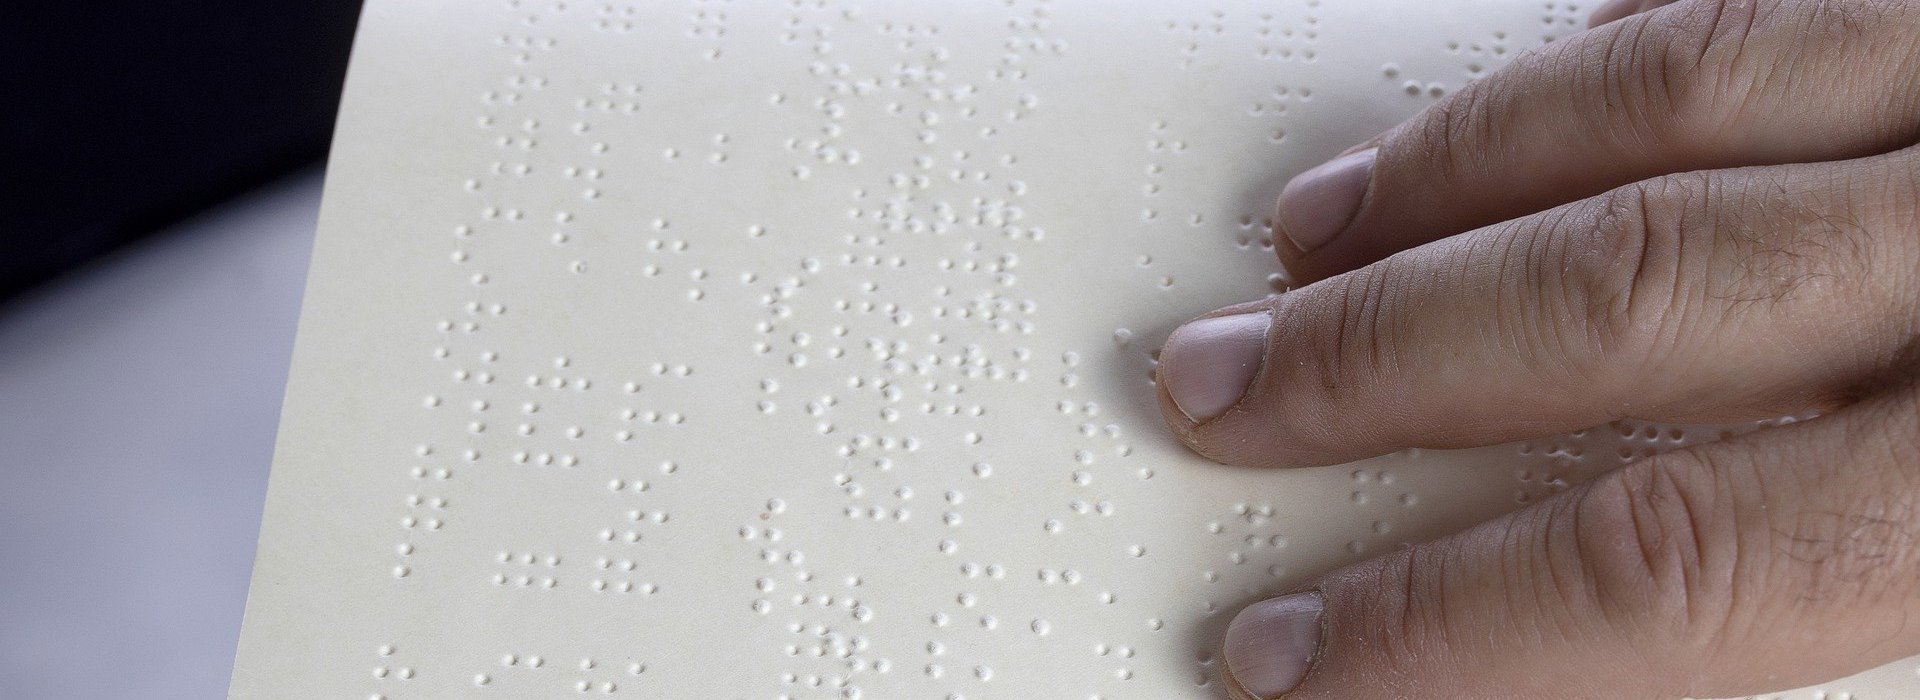 Brailletekst